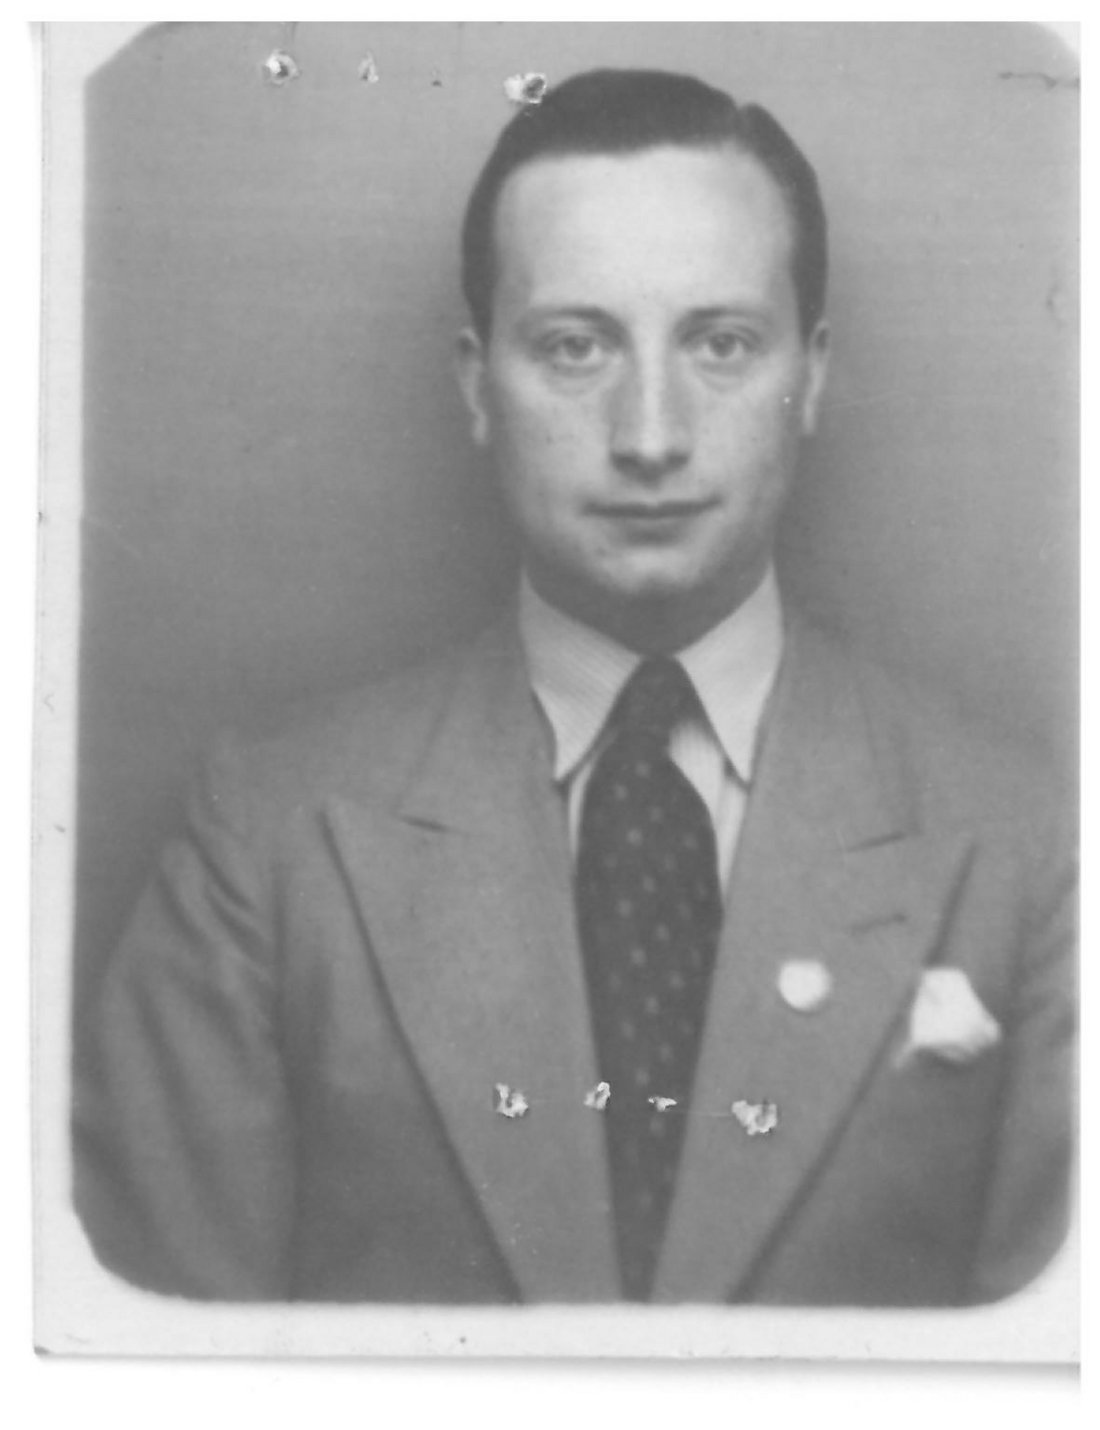 Benno Griebert, photographie de 1938. Source : Bundesarchiv Berlin-Lichterfelde, Akte R 9361-V 20159.